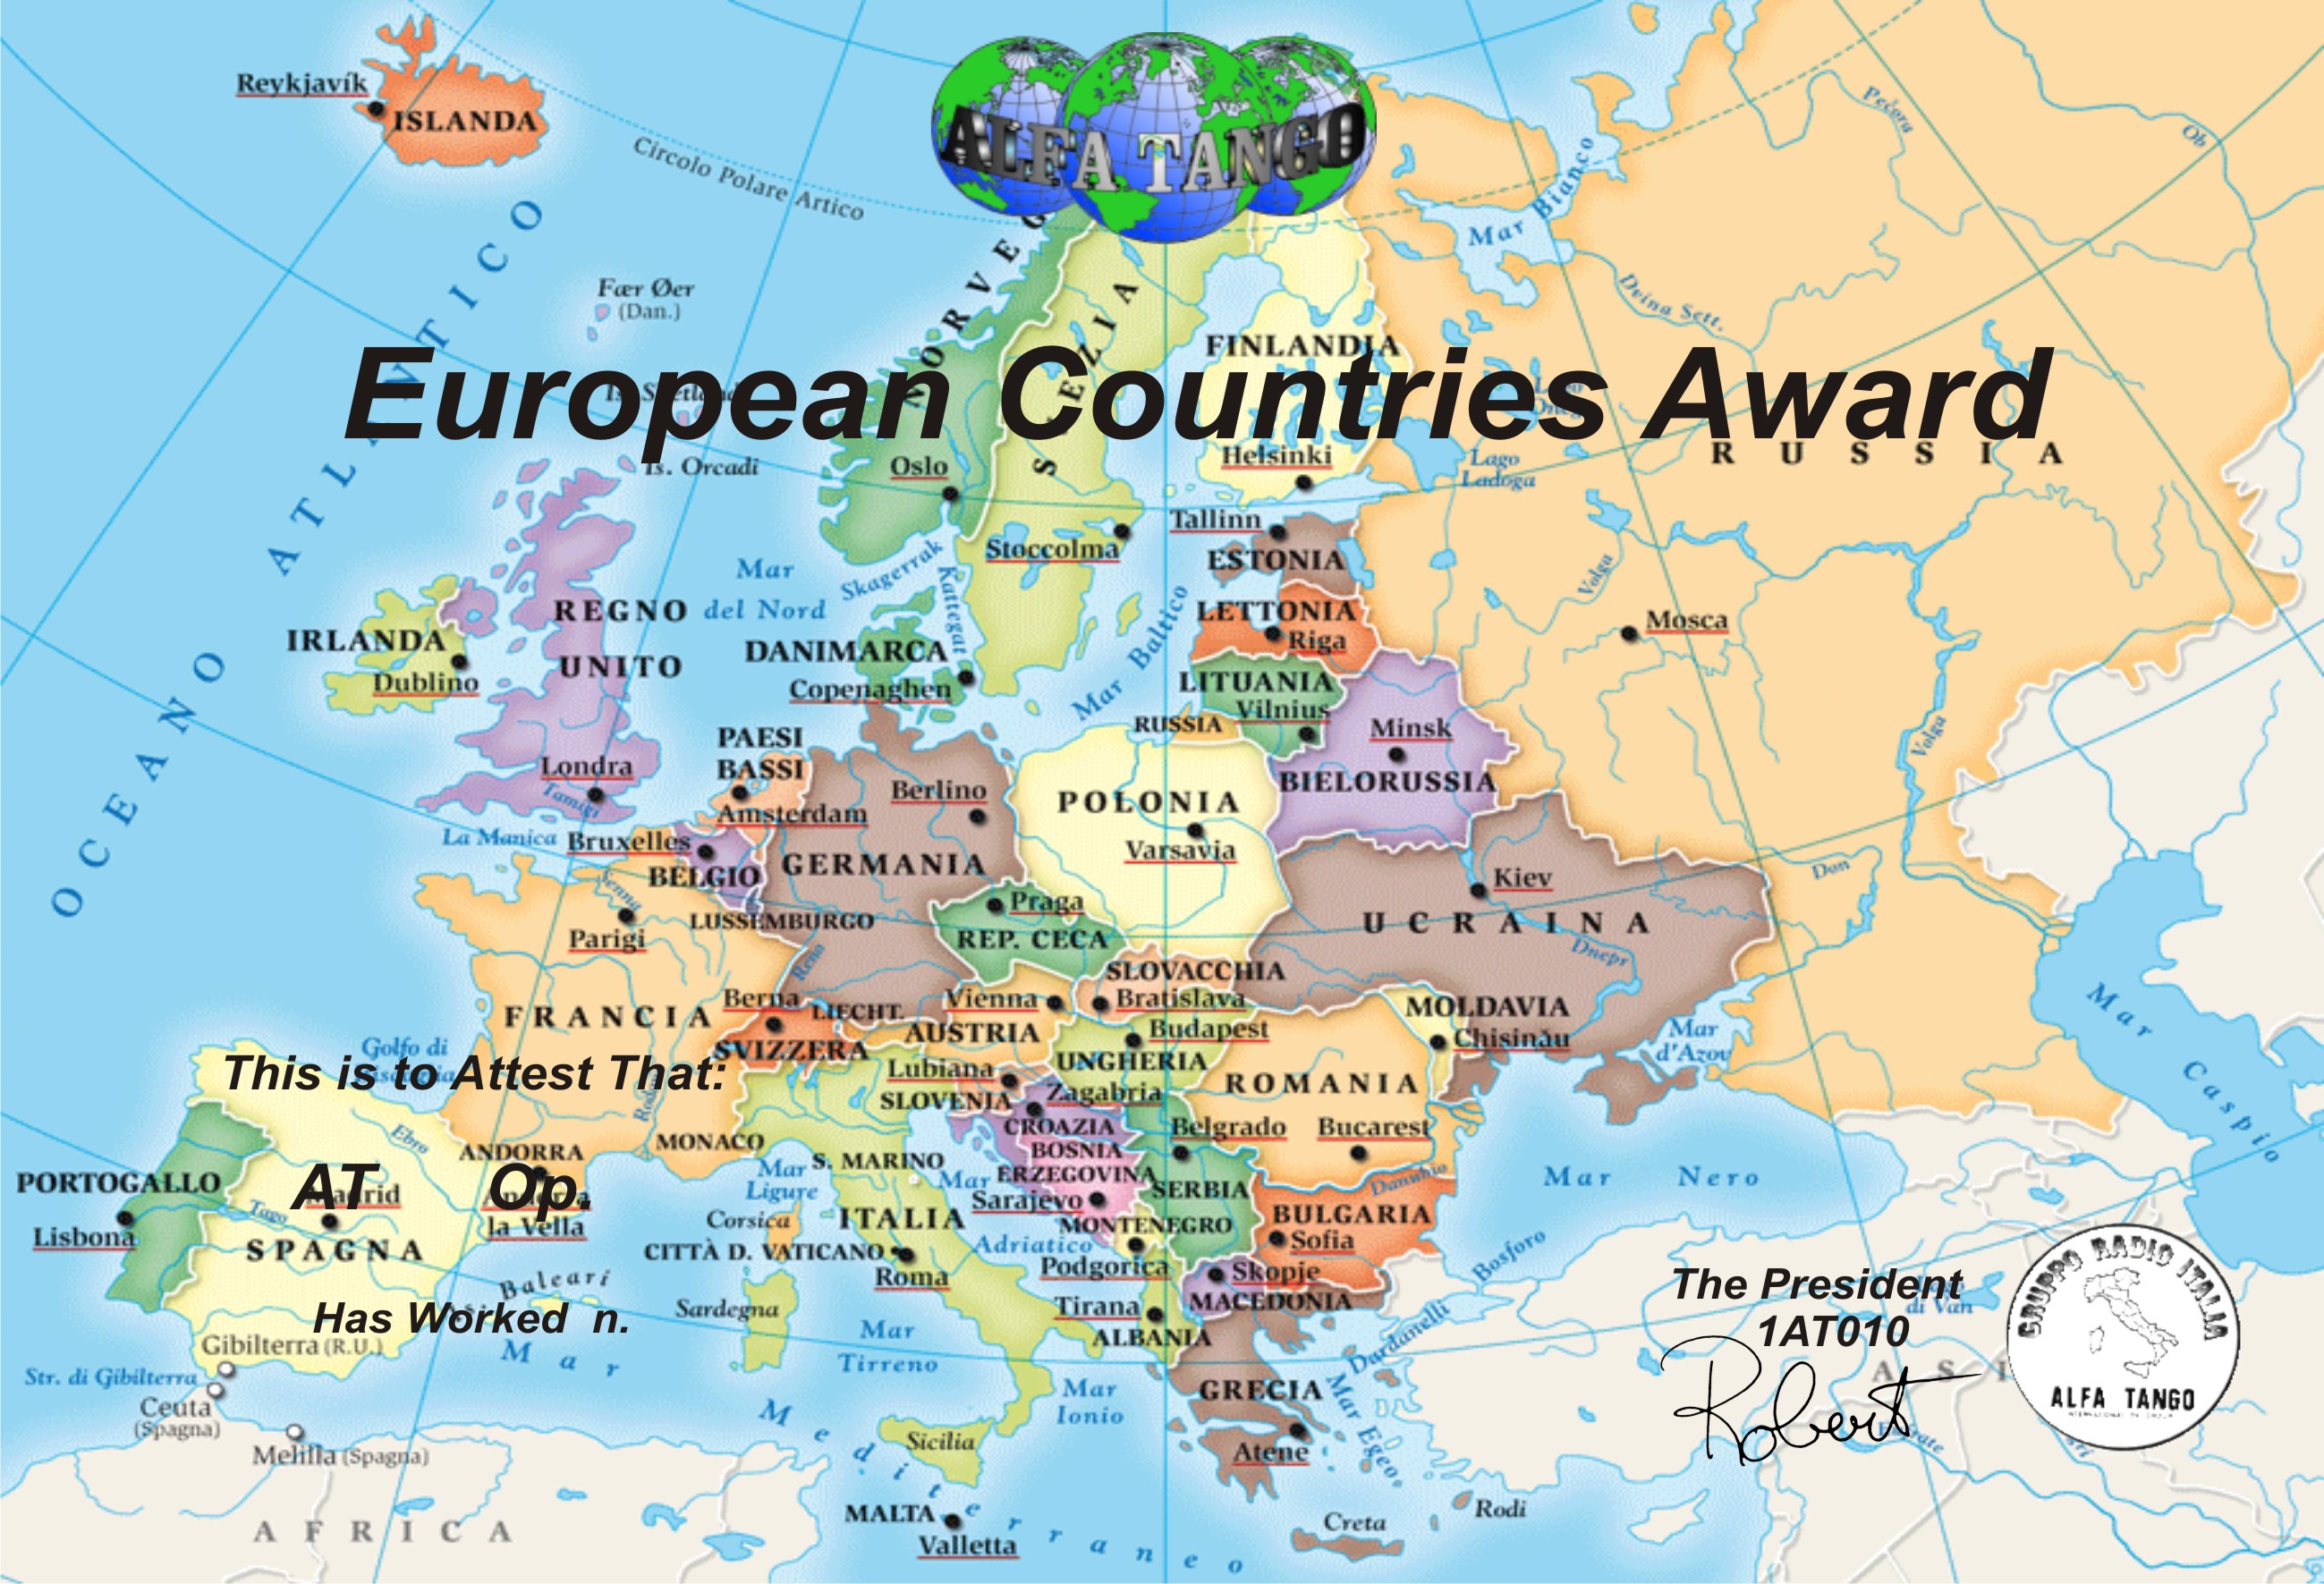 1_European_Countries_Award.jpg